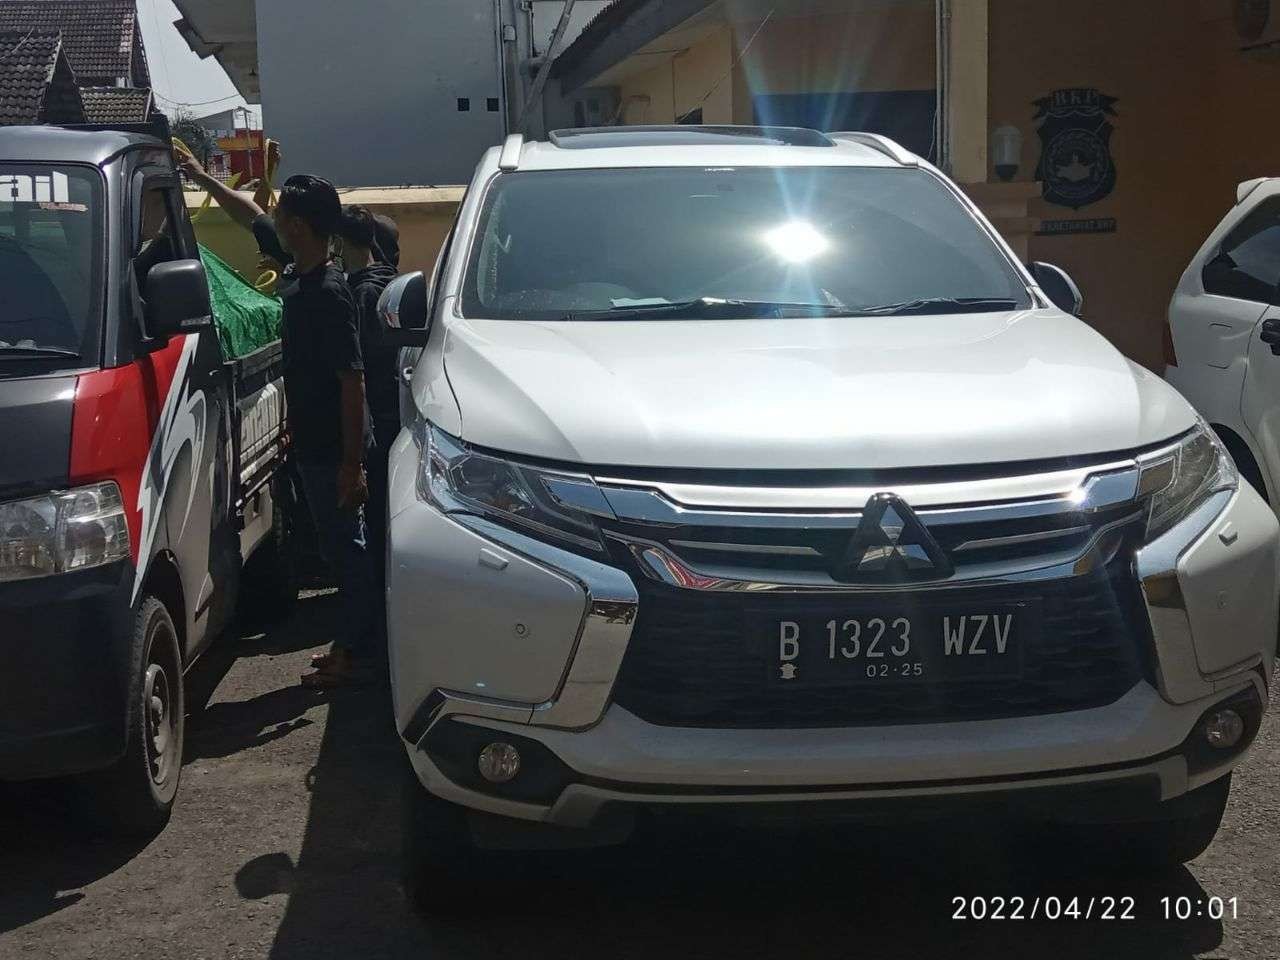 Mobil Pajero Sport warna putih milik Bupati Bojonegoro Anna Mu'awanah yamg dibawa kabutr pencuri. Mobil saat ini diparkir di Polred Bojonegoro untuk bahan penyidikan.(Foto: Sujatmiko/ngopibareng.id)